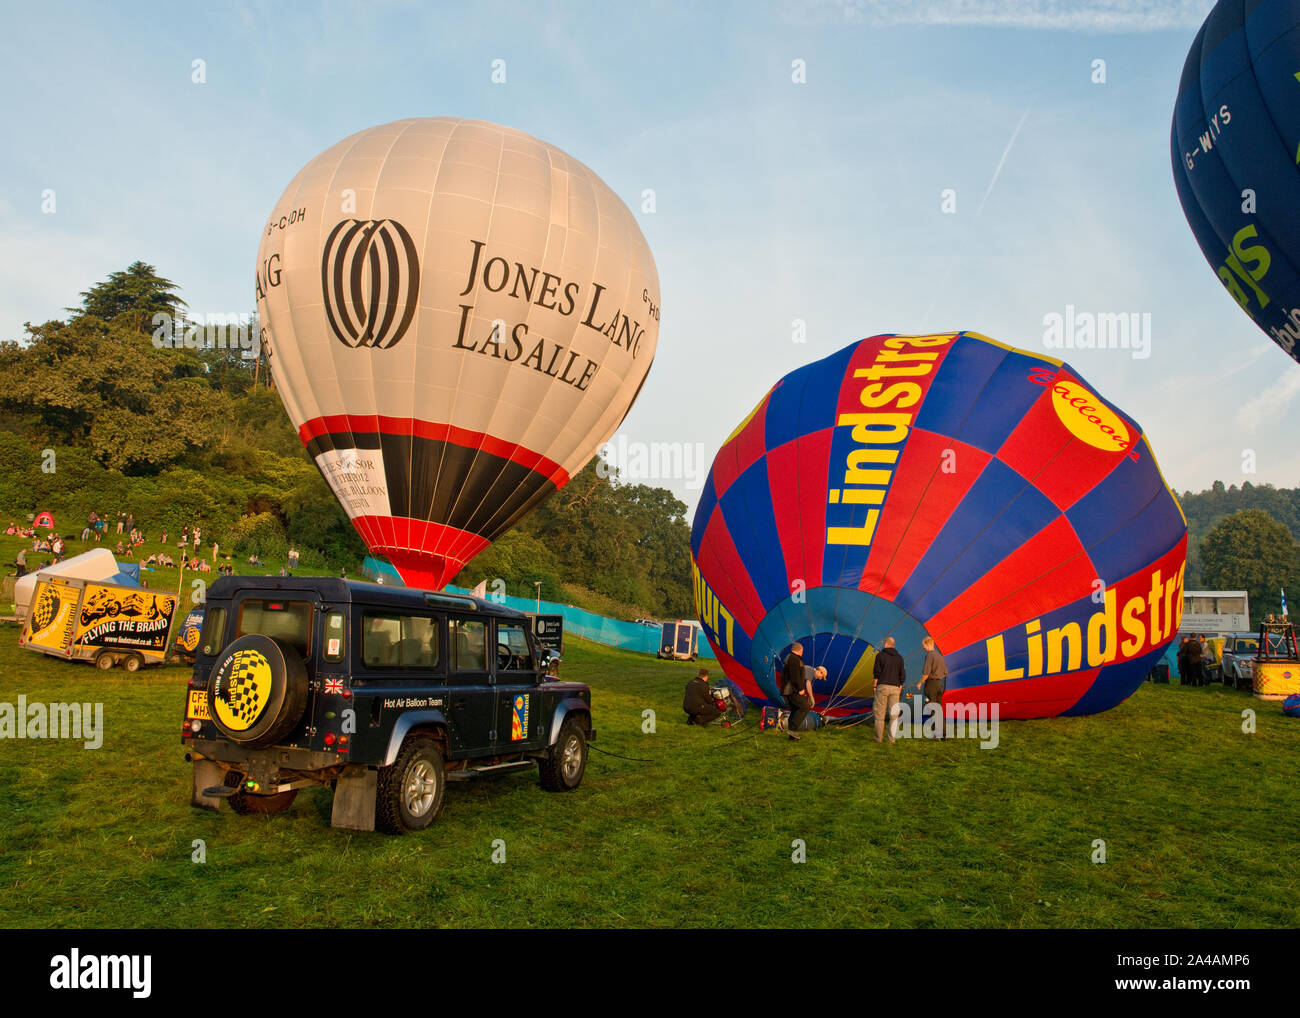 Lindstrand hot air balloon d'être gonflé. Bristol International Balloon Fiesta, Angleterre Banque D'Images